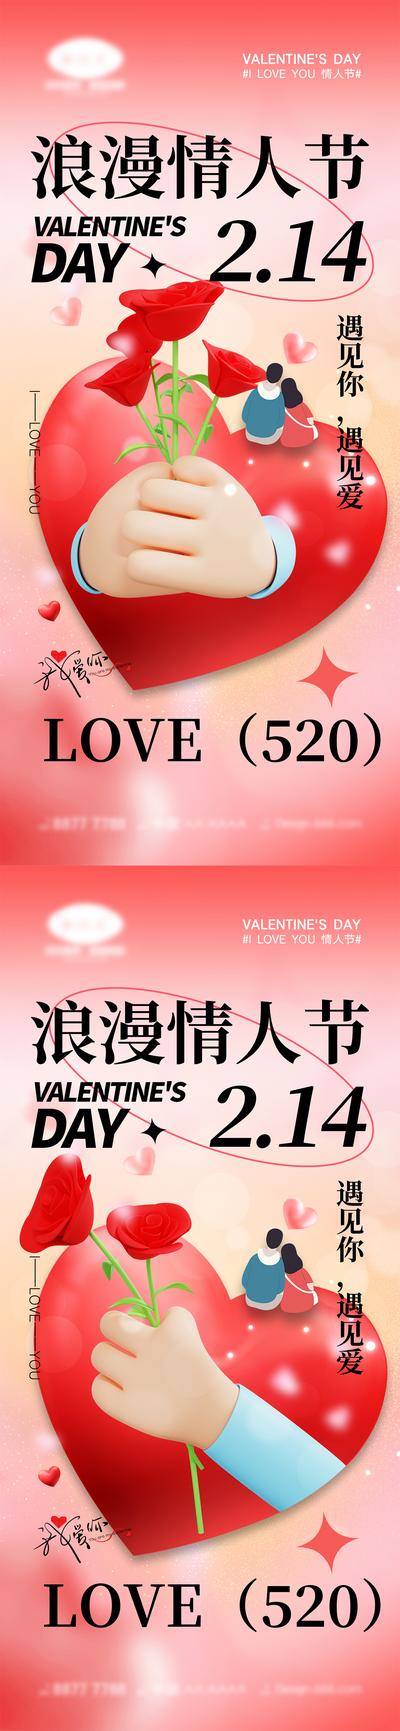 【南门网】海报 活动 520 情人节 告白日 love 爱情 喜鹊 牛郎织女 七夕 爱心 气球 214